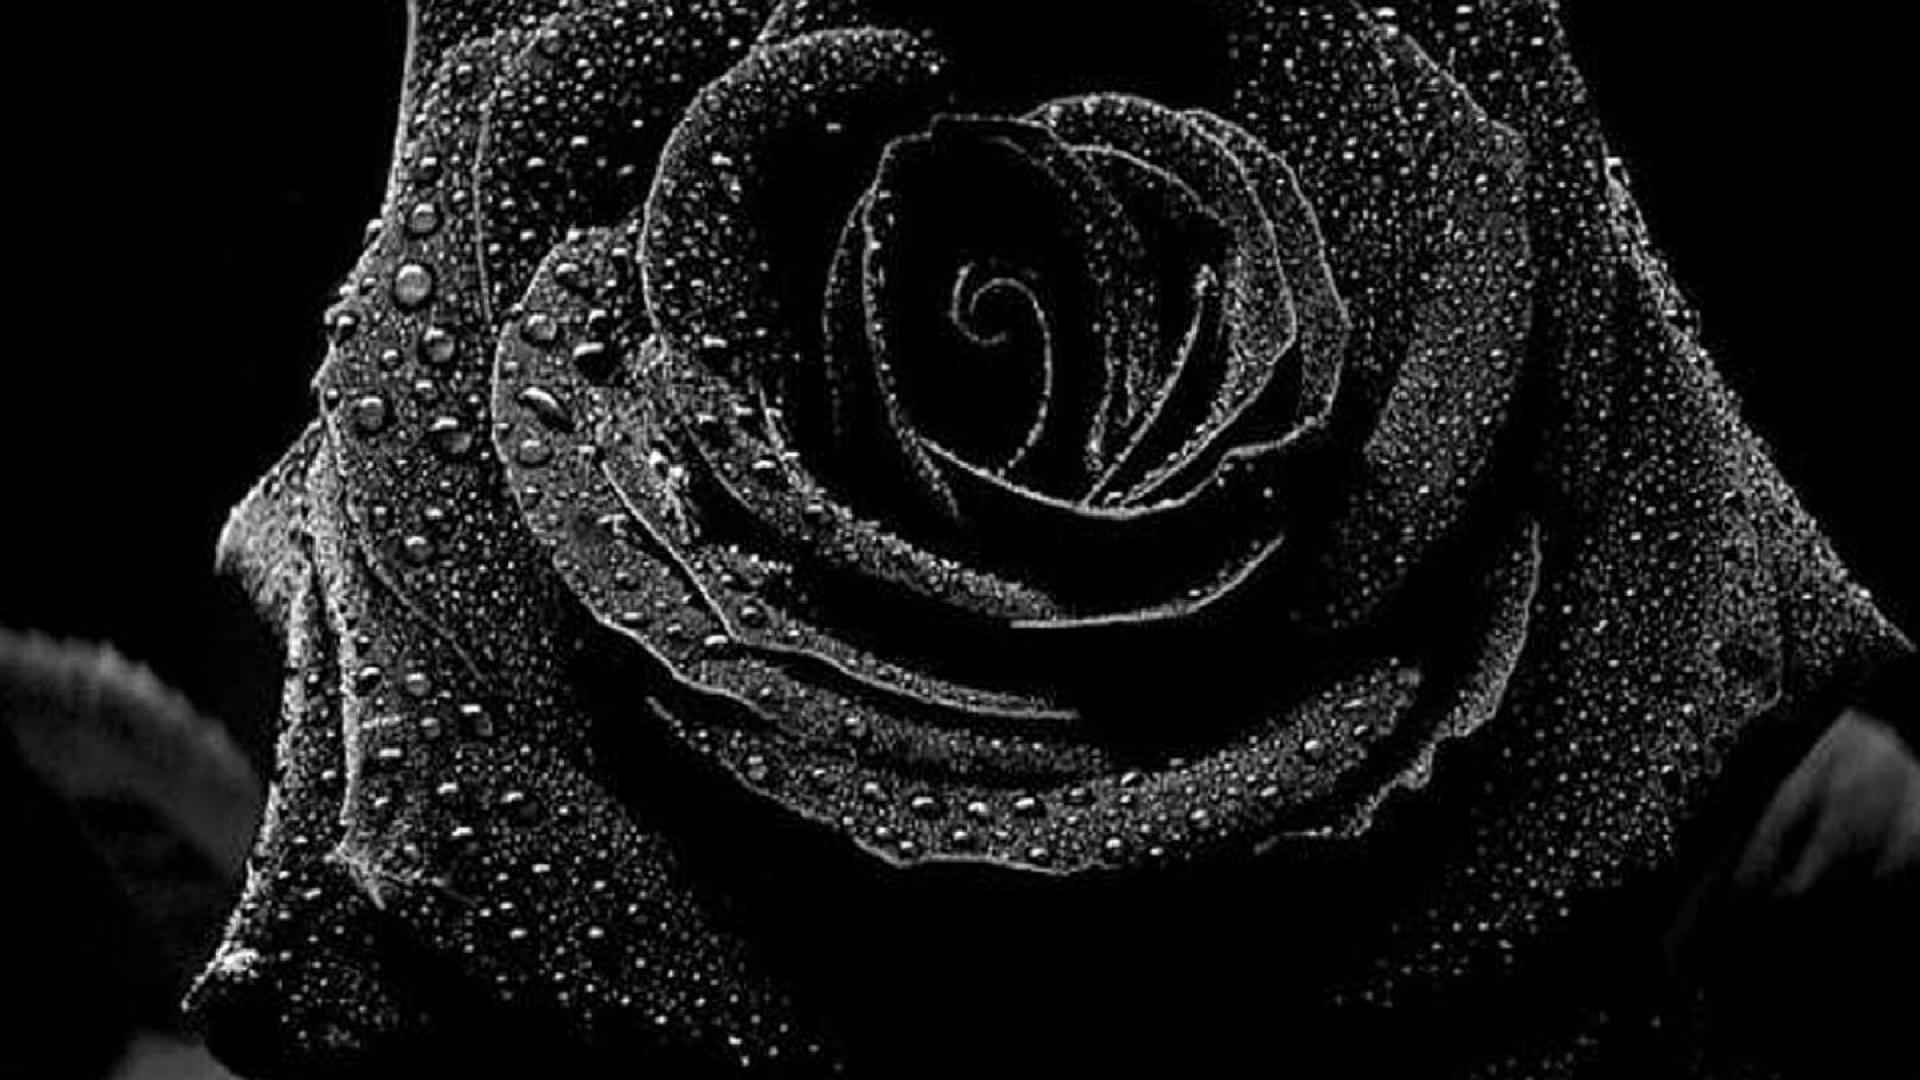 schöne schwarze rosen bilder - Schöne schwarze rosen bilder